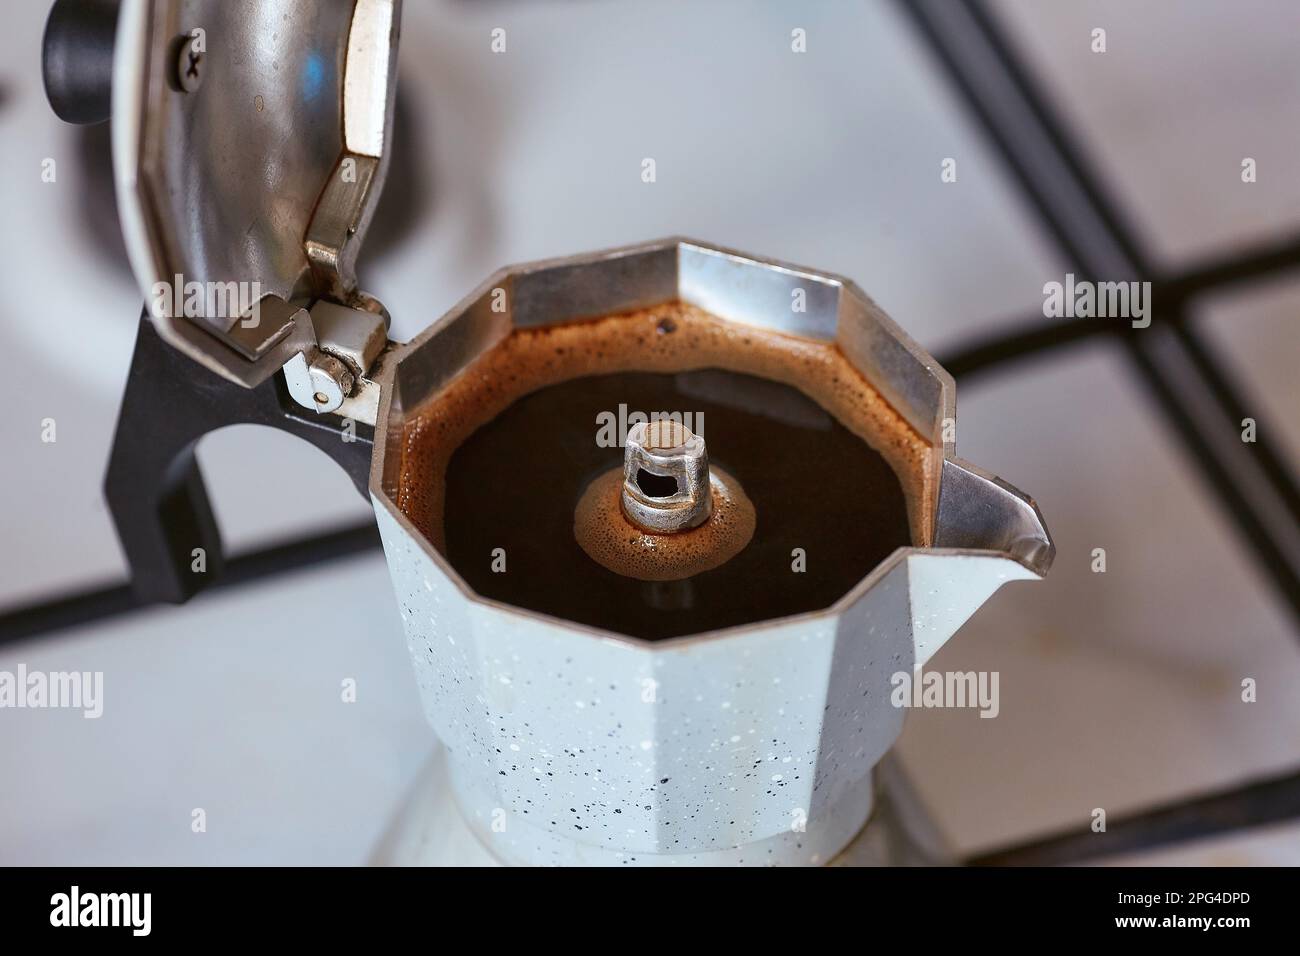 Cafetera Espresso en estufa Fotografía de stock - Alamy